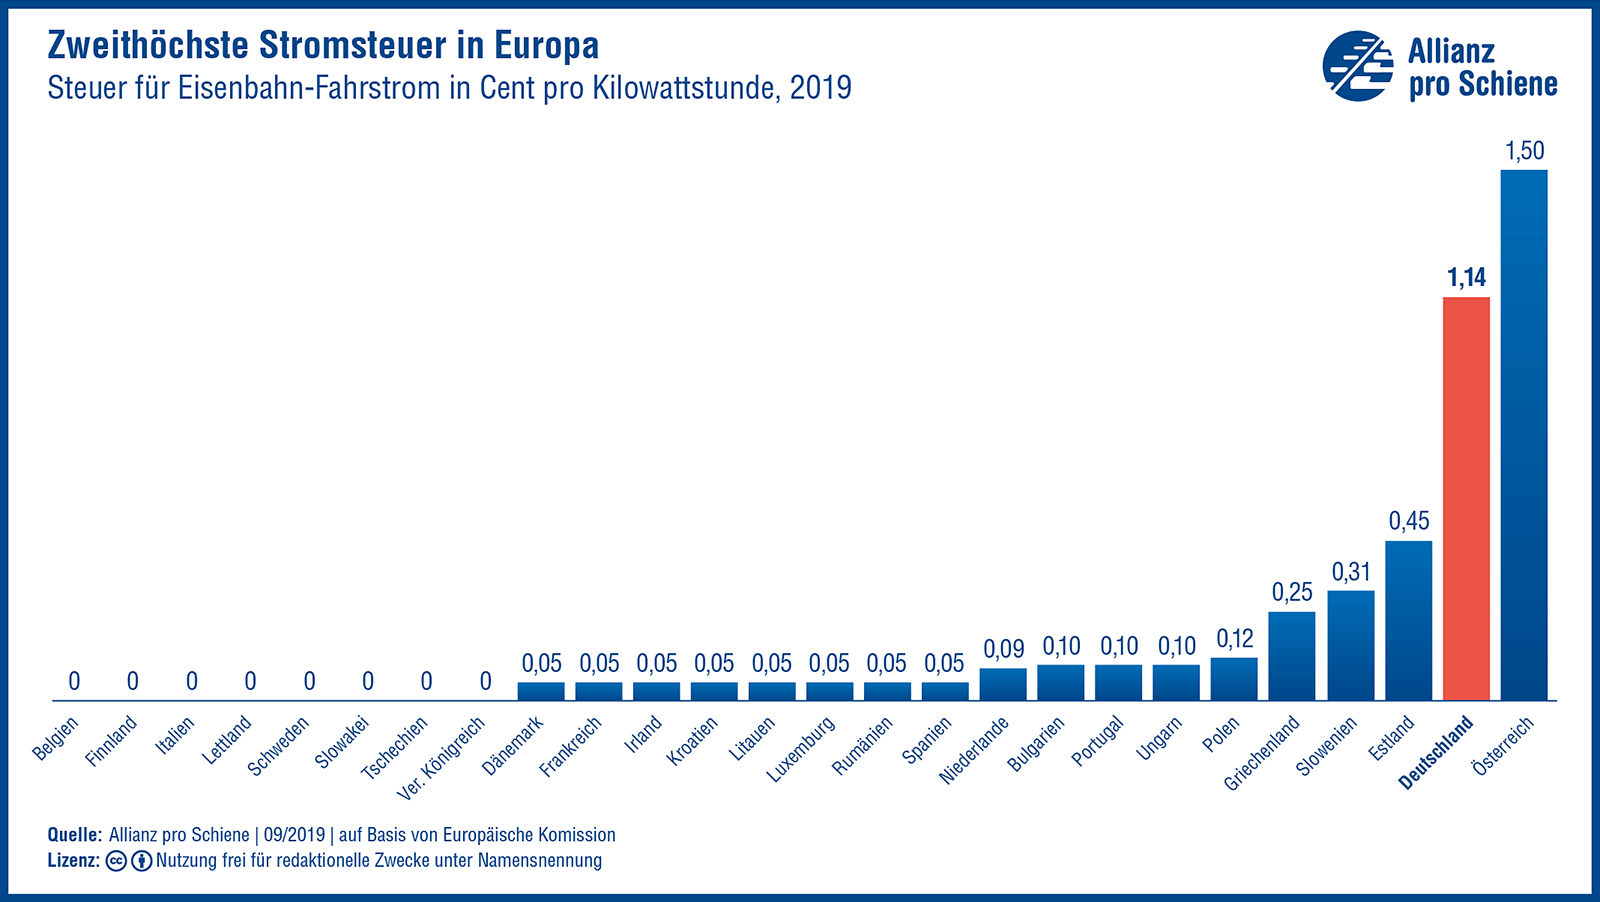 Zweithöchste Stromsteuer in Europa für Eisenbahn-Fahrtstrom